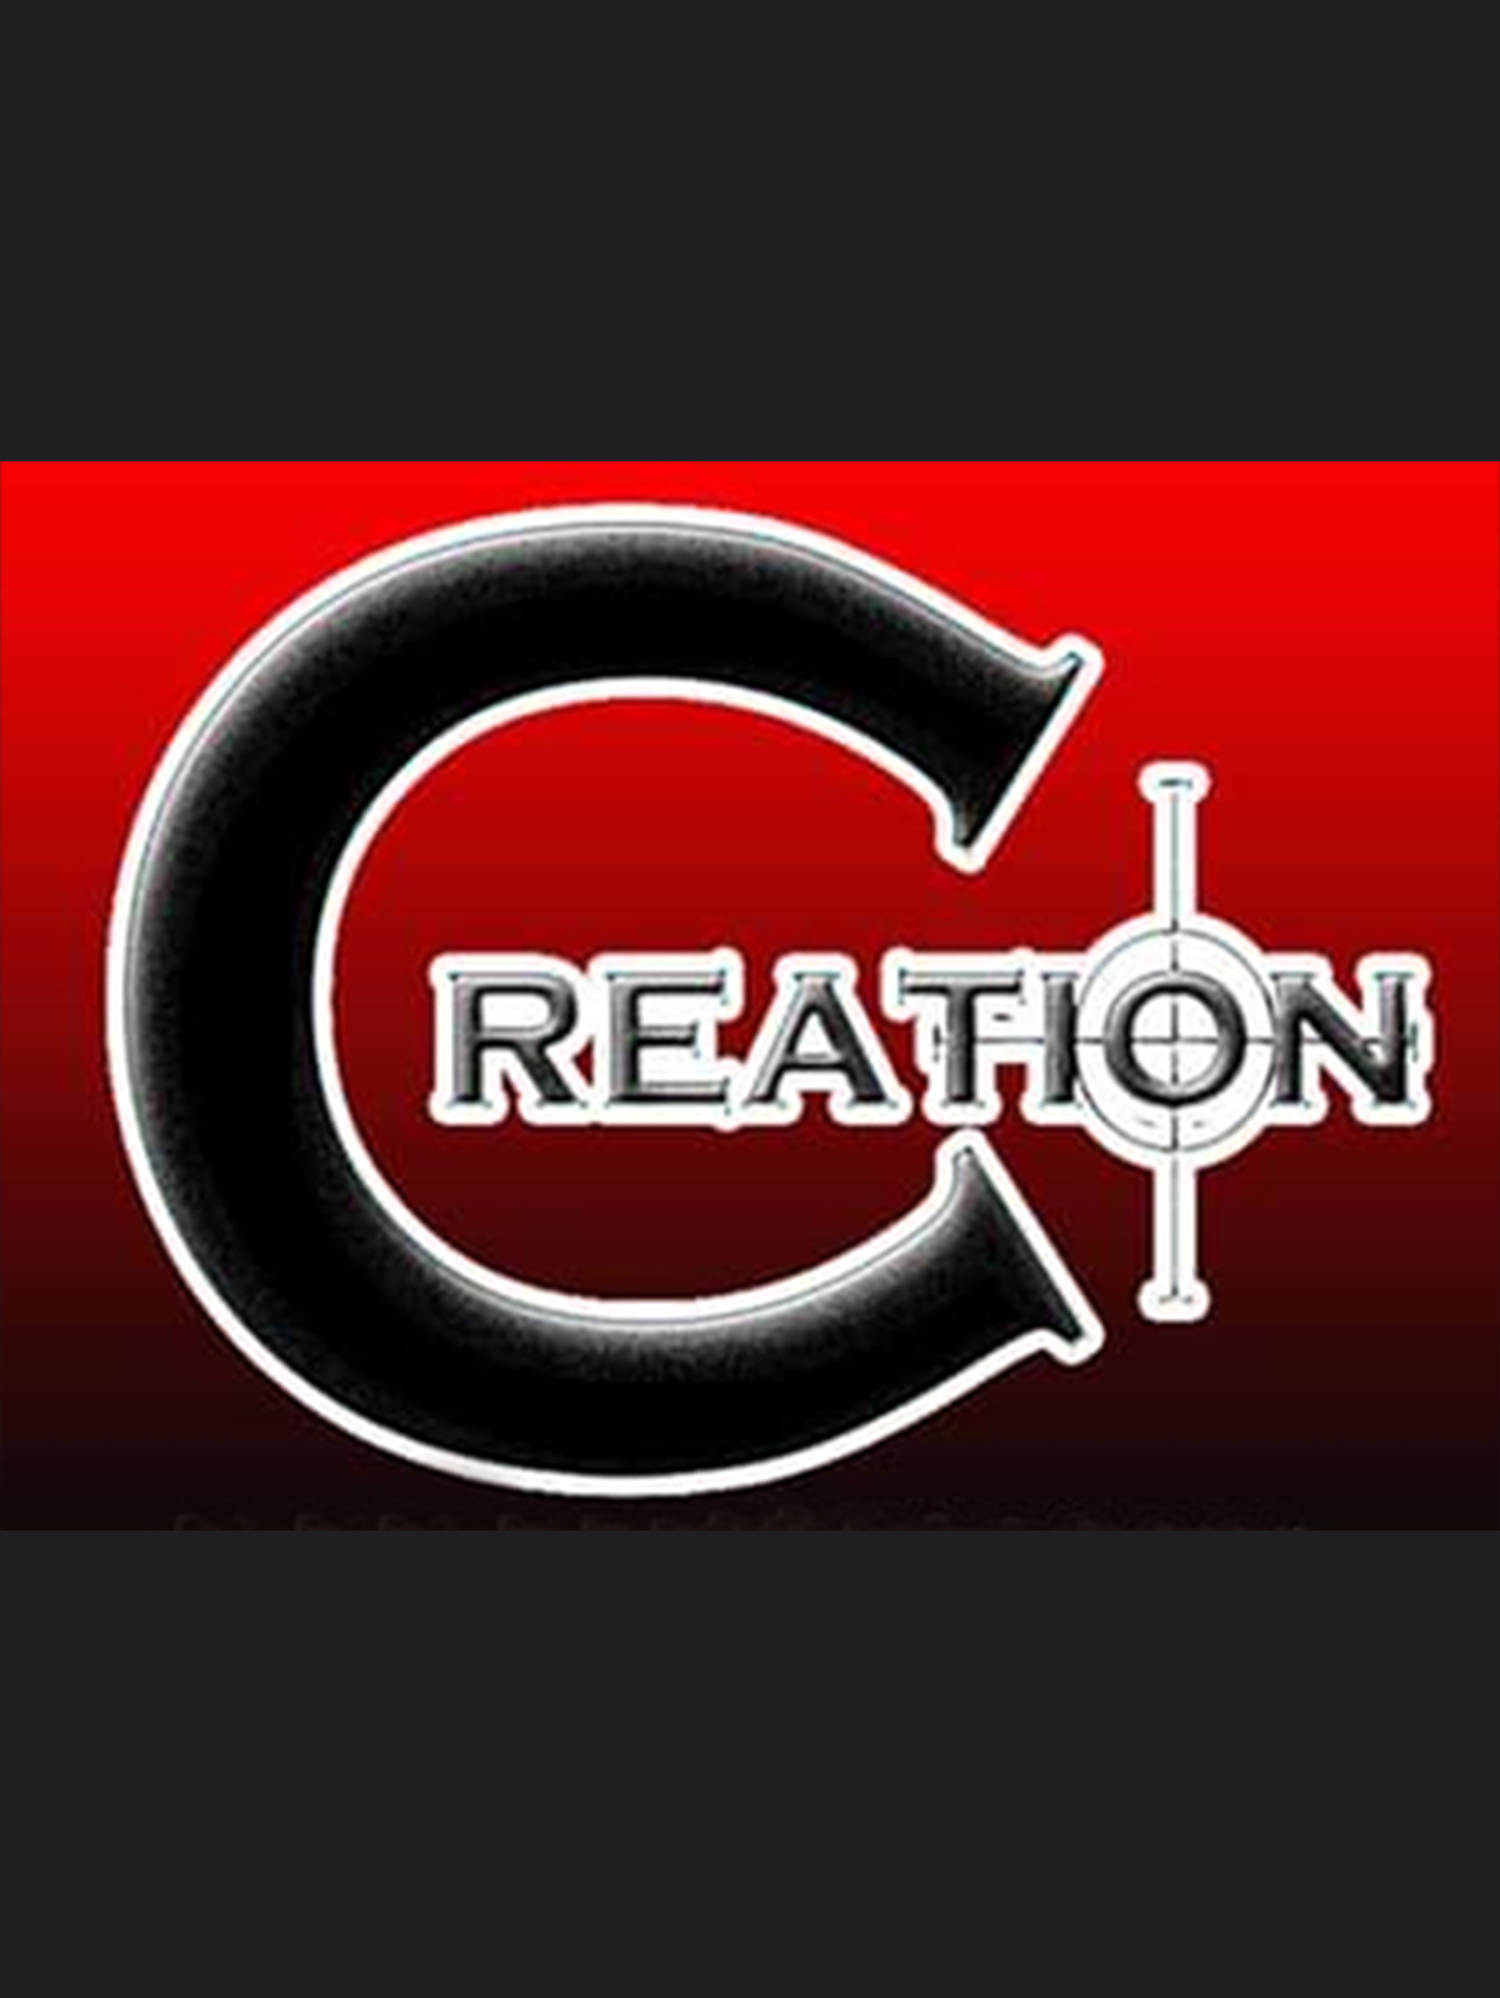 CREATION